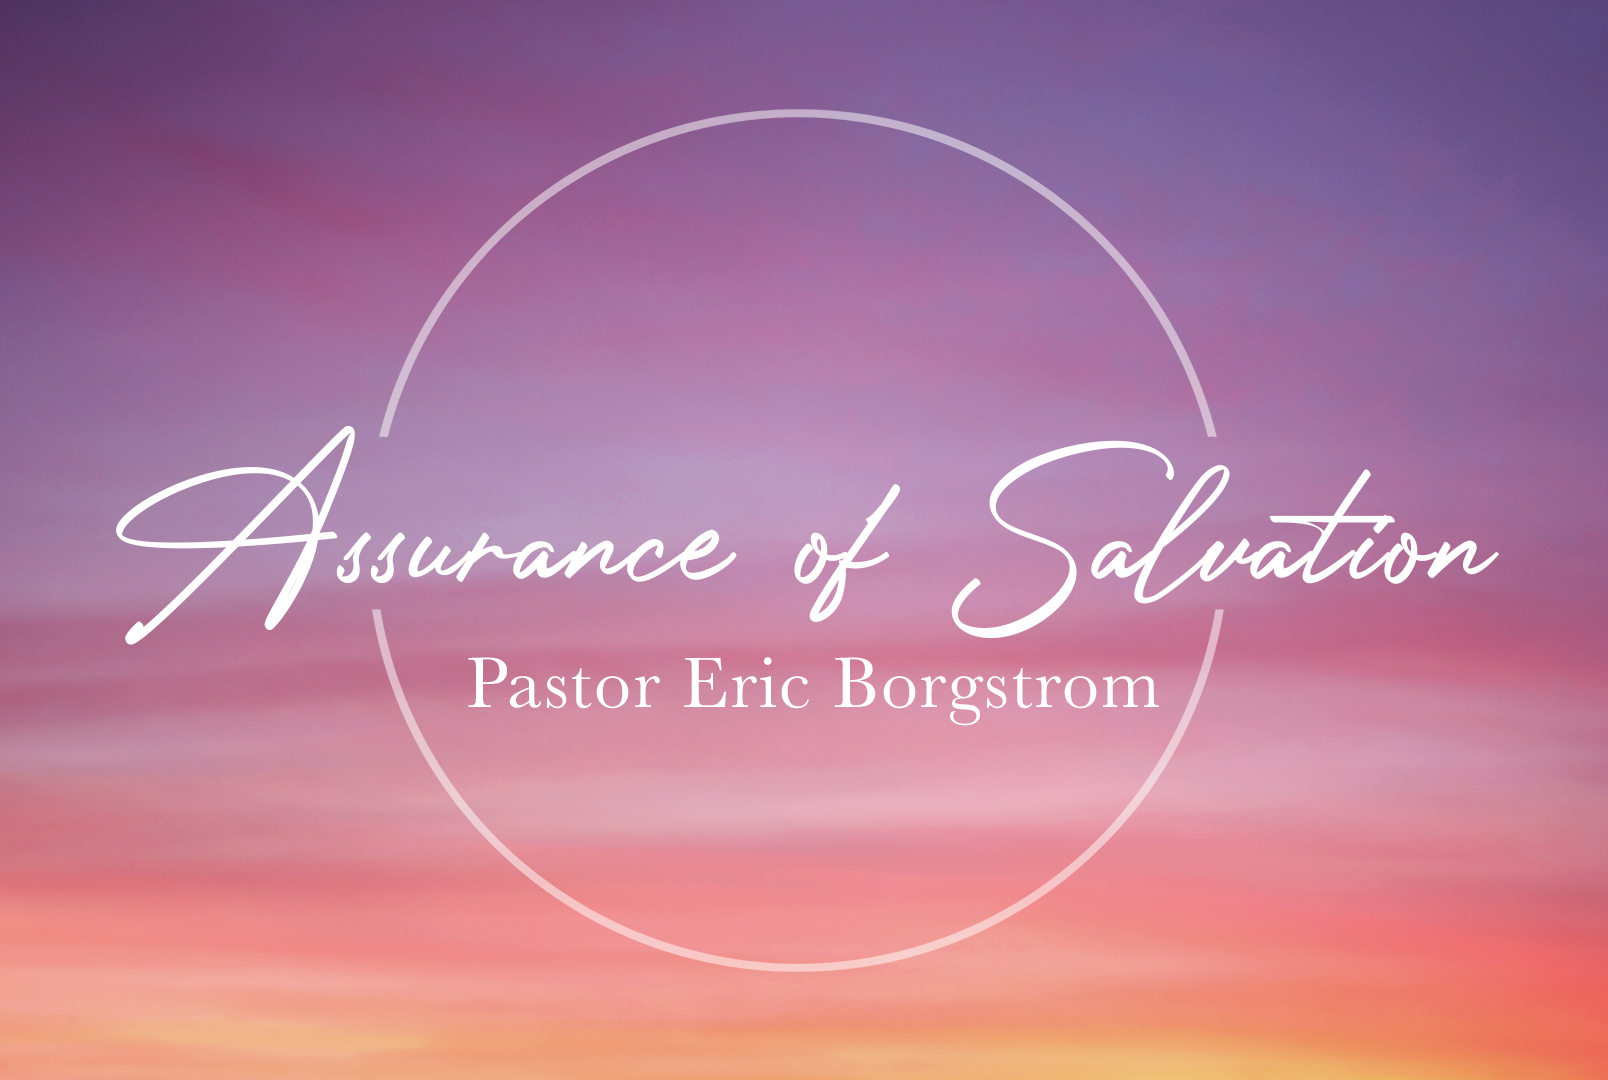 Assurance of Salvation banner